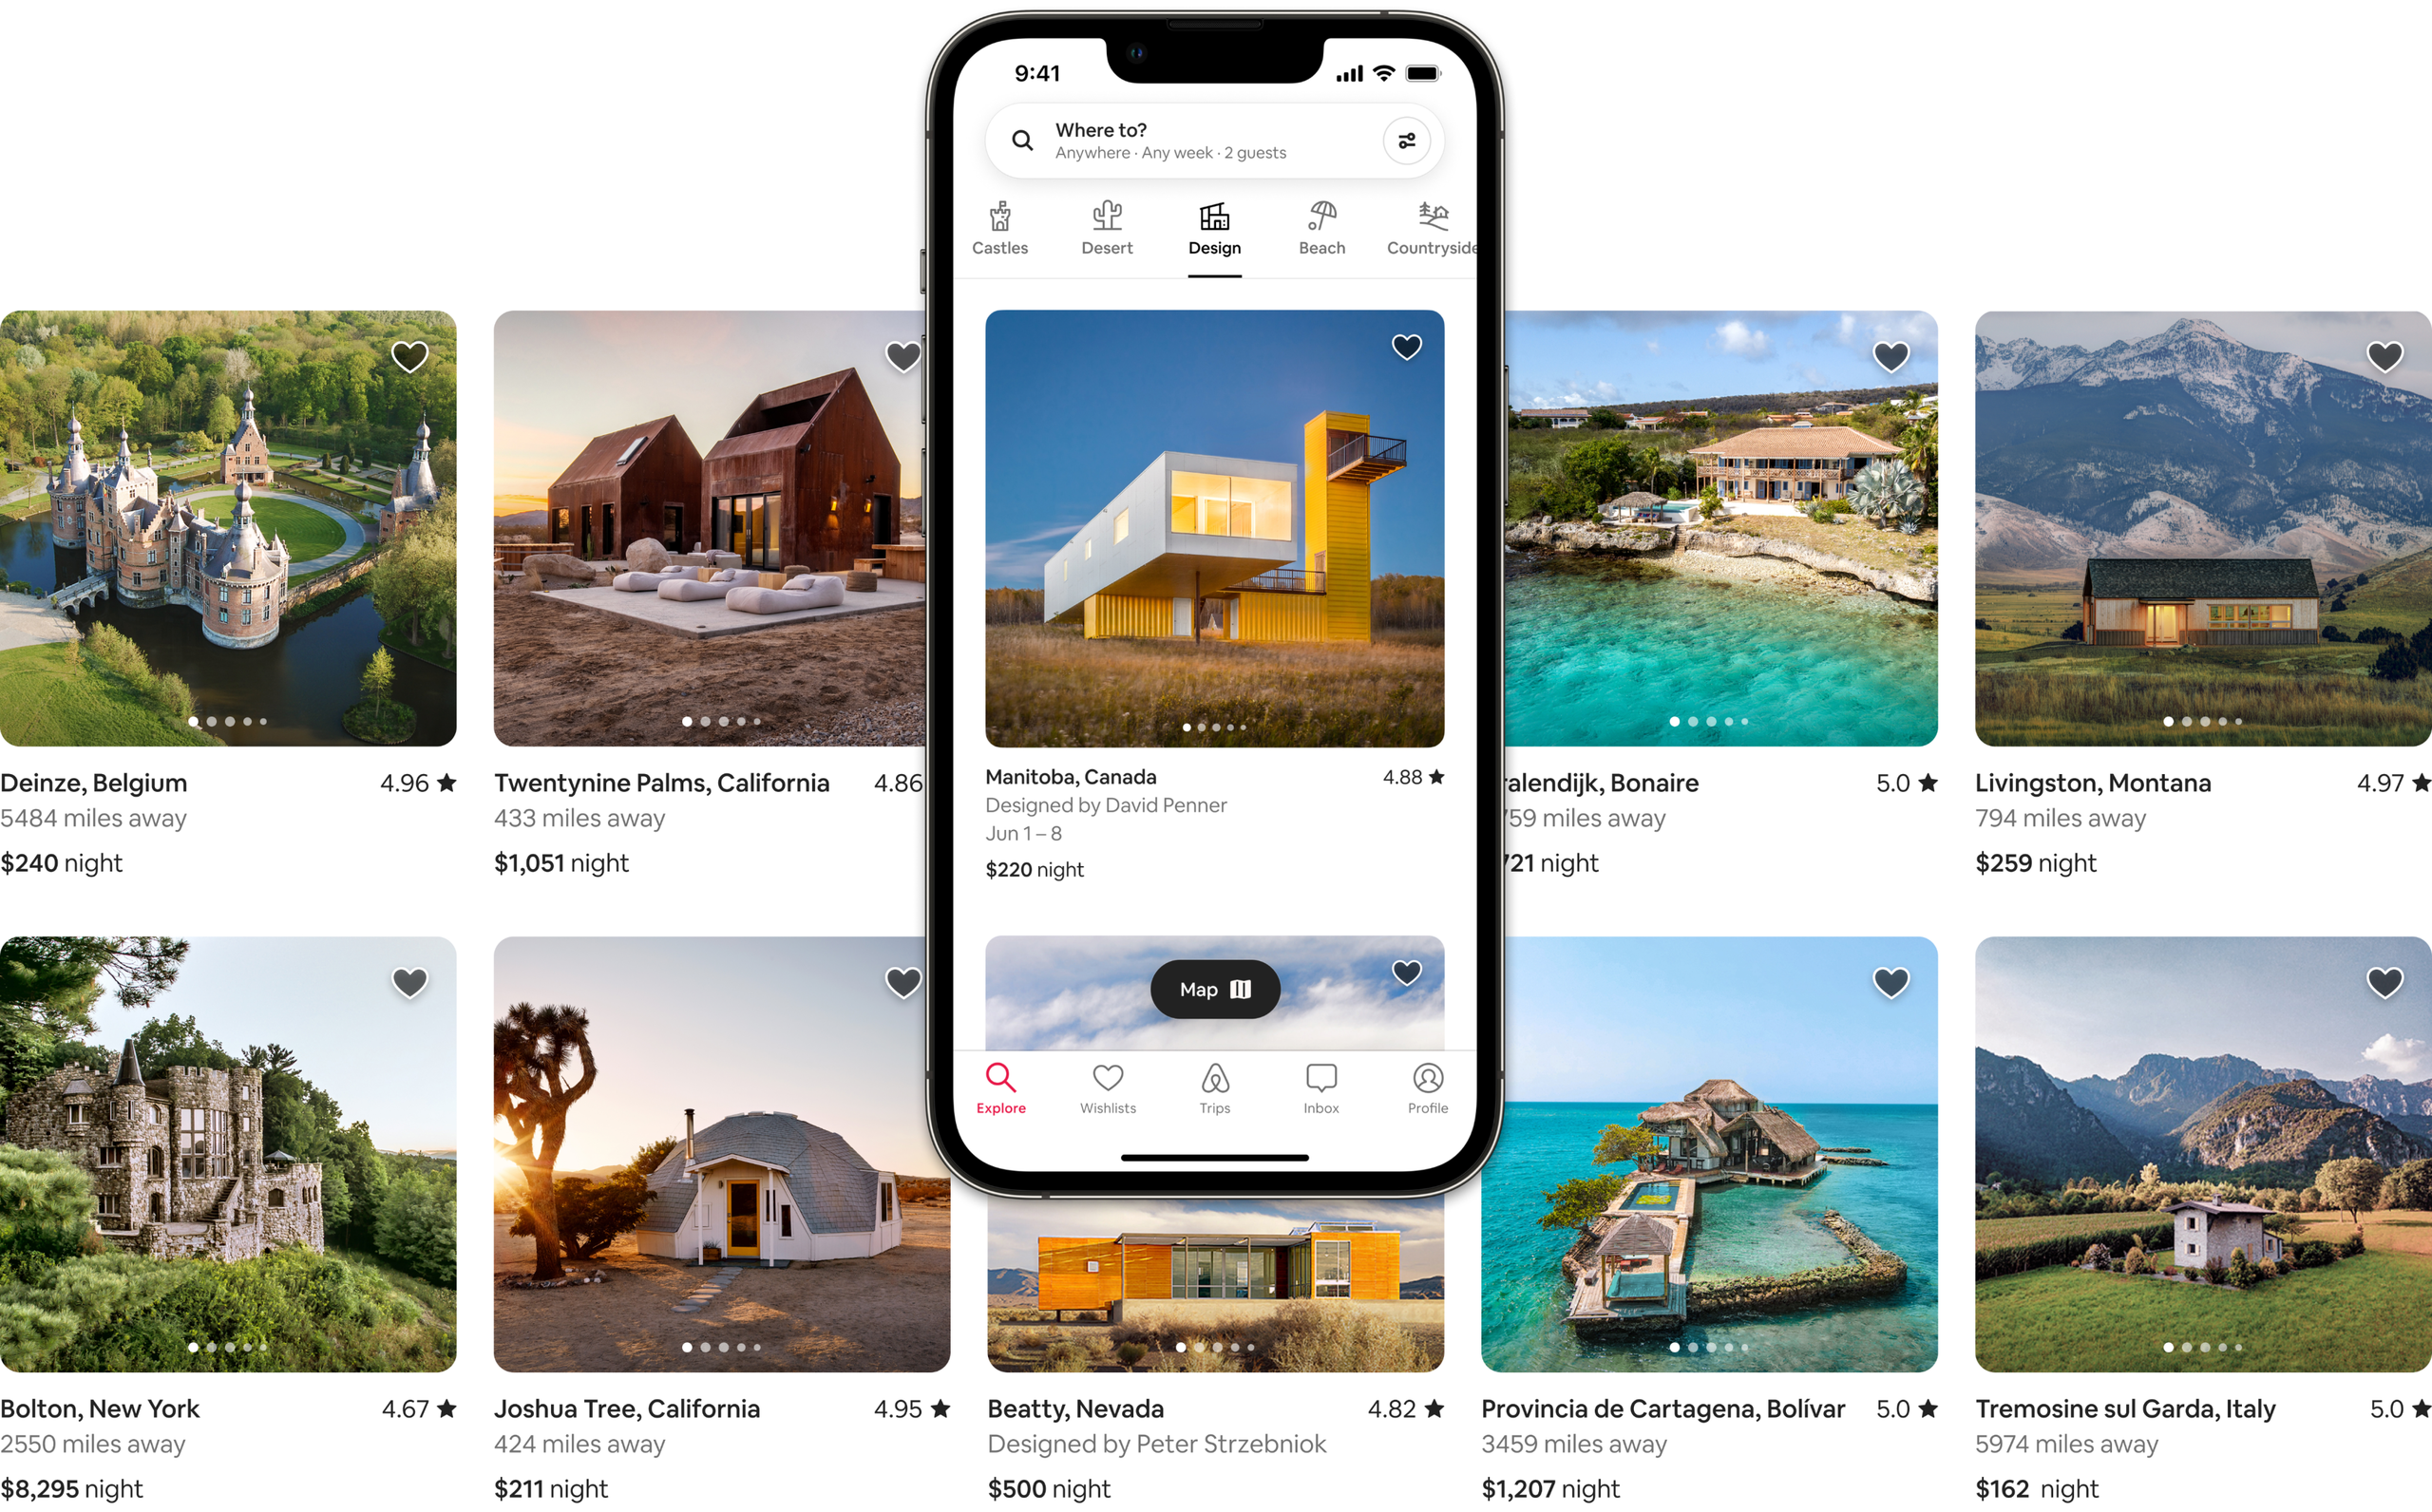 Два ряди гарних фотографій помешкань Airbnb категорій «Замок», «У пустелі», «Дизайн», «Пляжі» та «За містом». Одне з оголошень показано на екрані мобільного телефона – саме так оголошення відображаються в застосунку Airbnb.